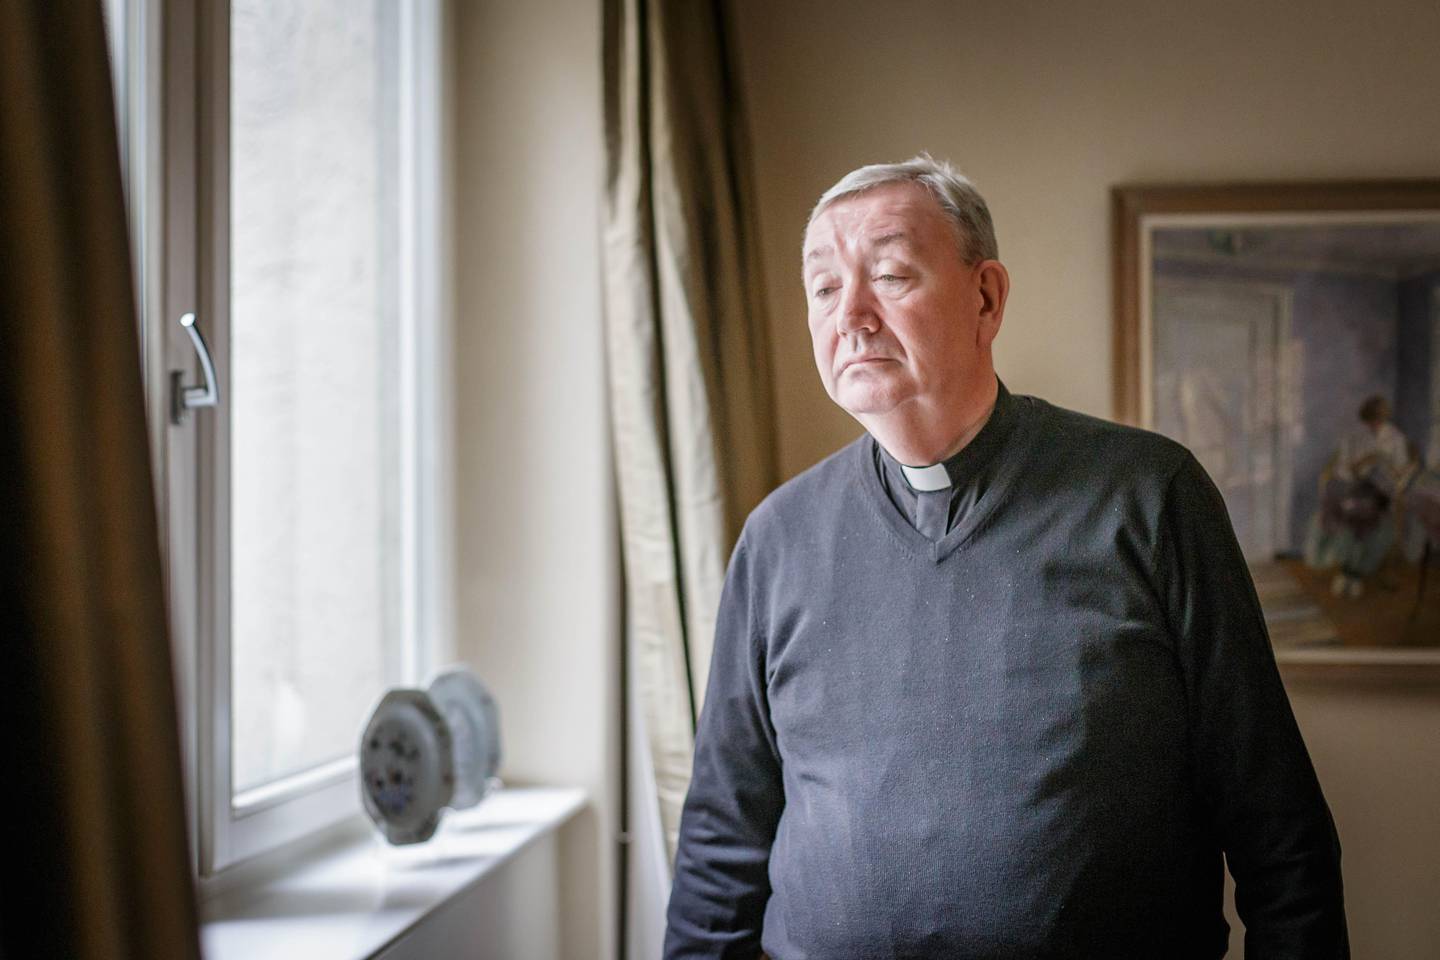 Bernt Eidsvig, Katolsk Biskop, Oslo. "det er en dyp, alvorlig krise. Vi kan ikke kalle det noe annet,"